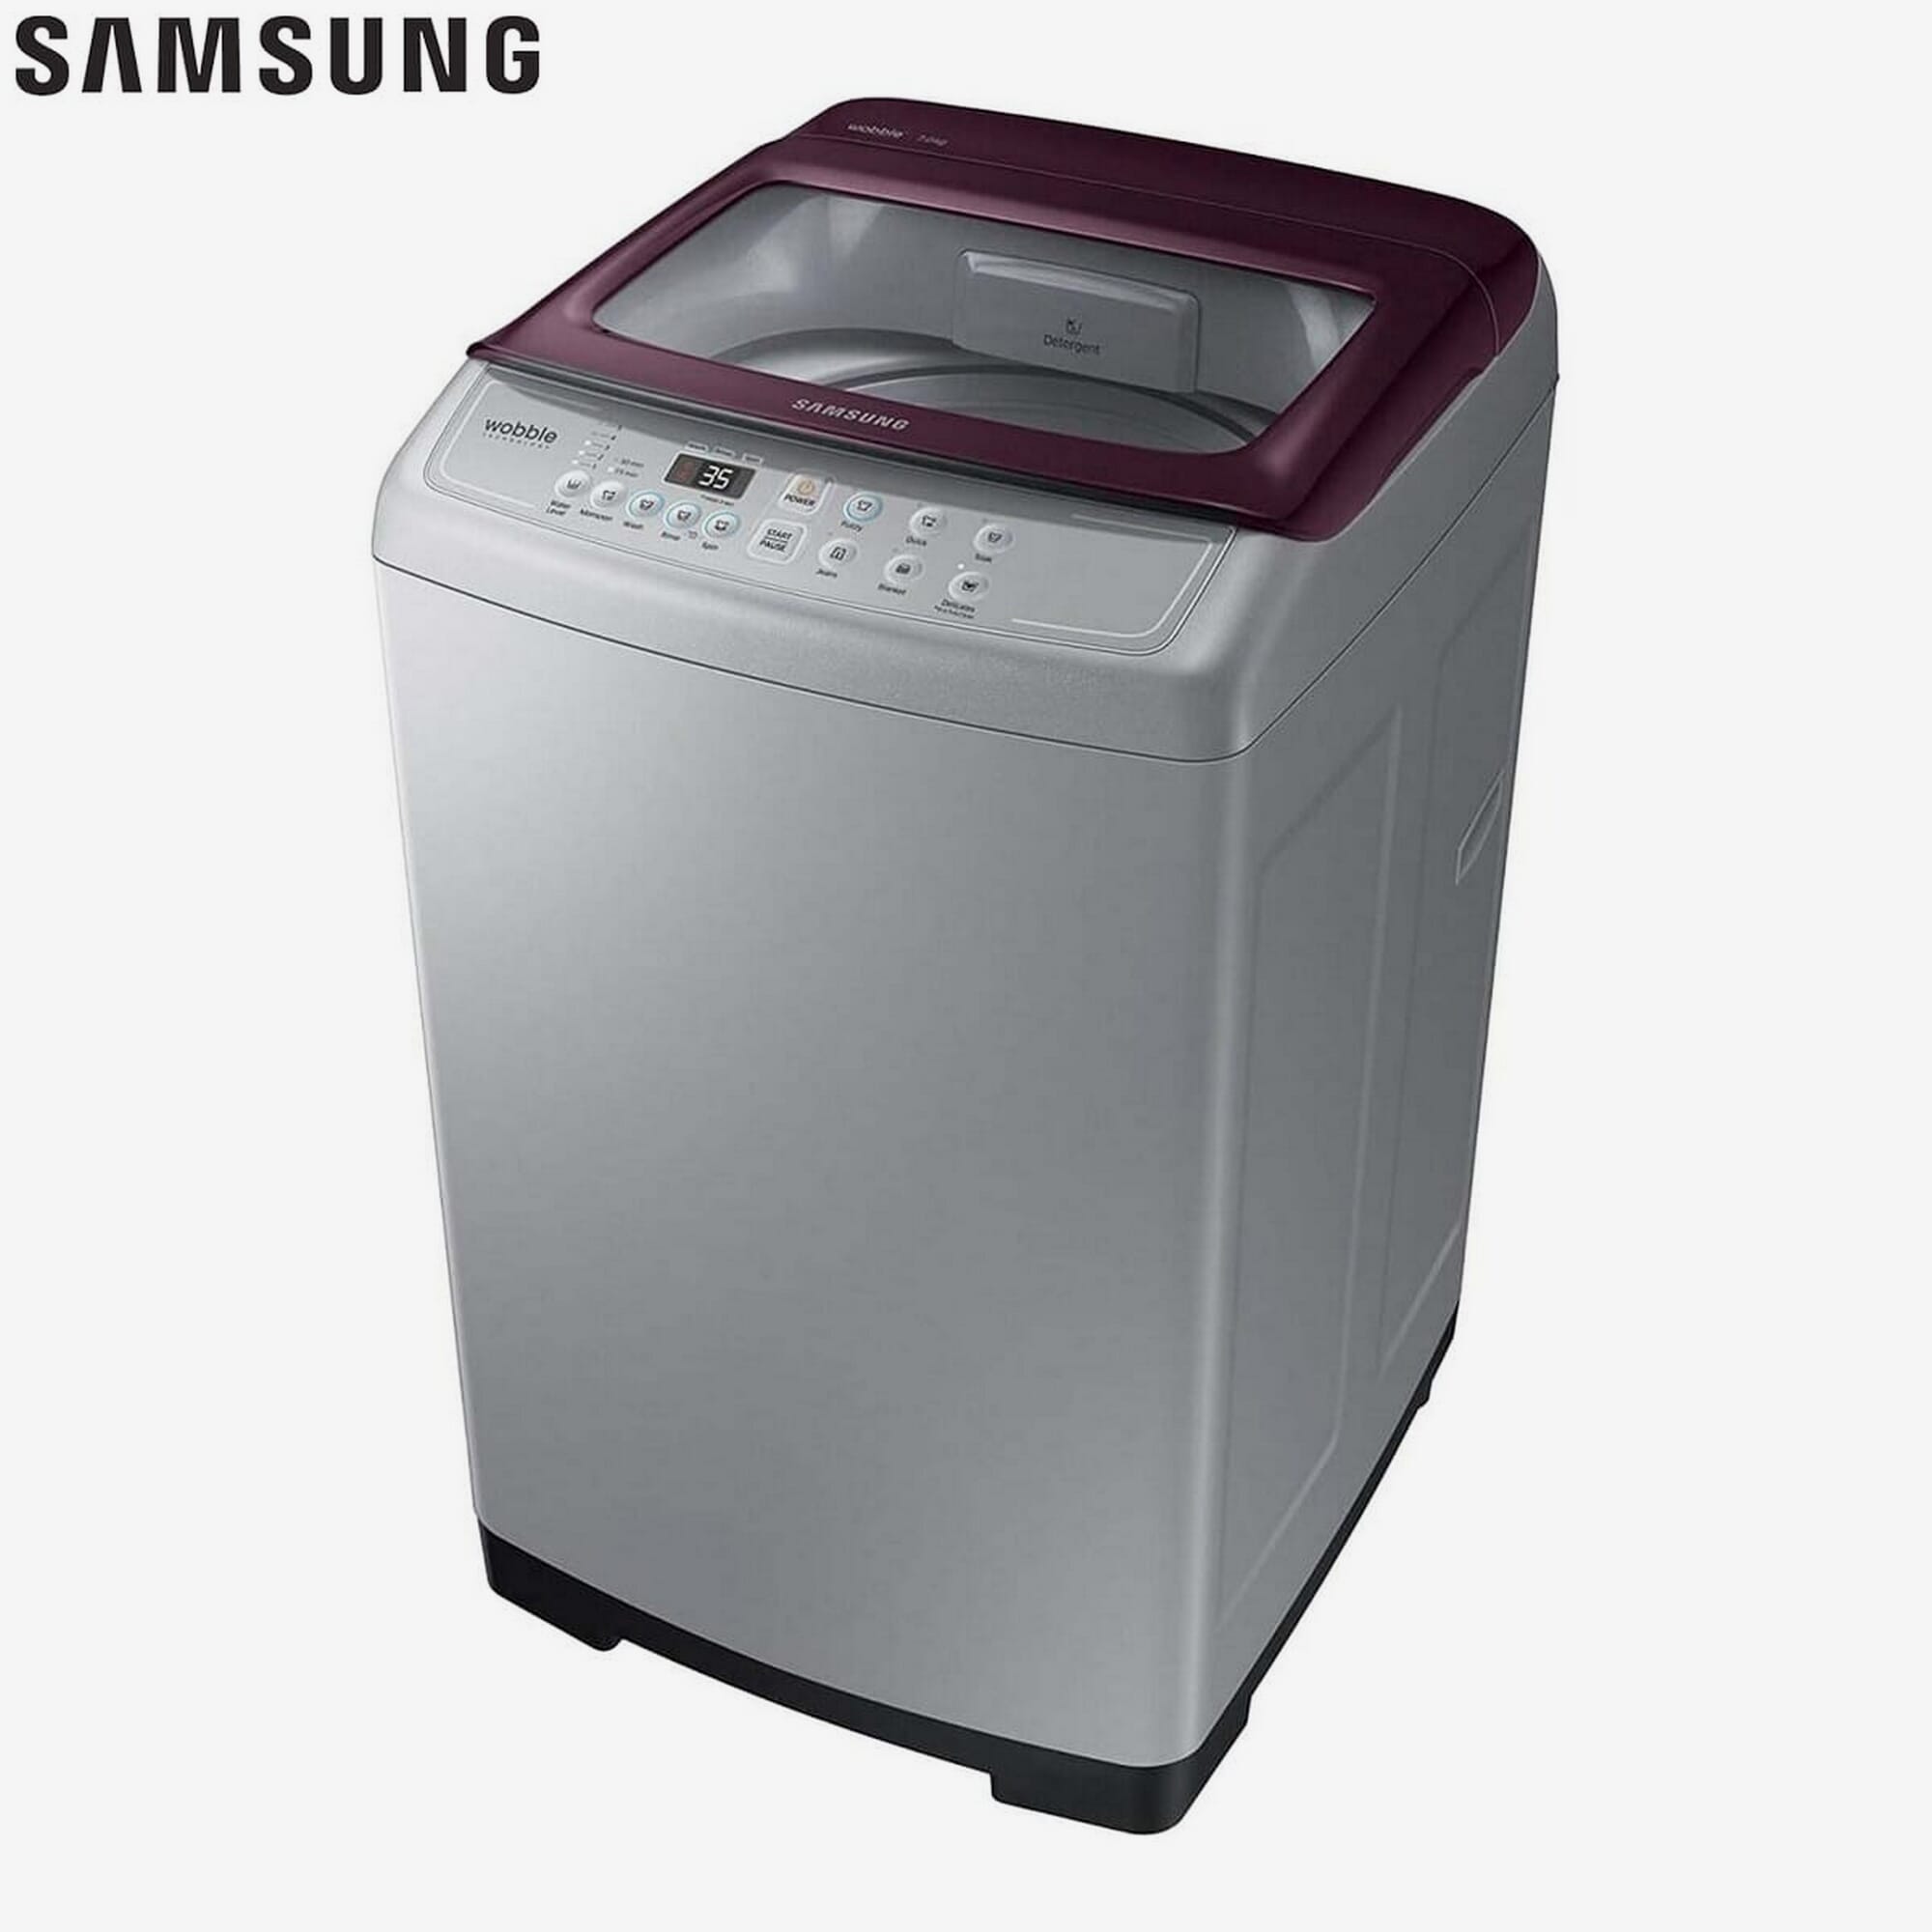 Стиральная машина рязань недорого. Samsung washing Machine 6kg. Стиральная машина Samsung 6 kg. Стиральная машина Ренова. Стиральная машина Samsung 7 kg.